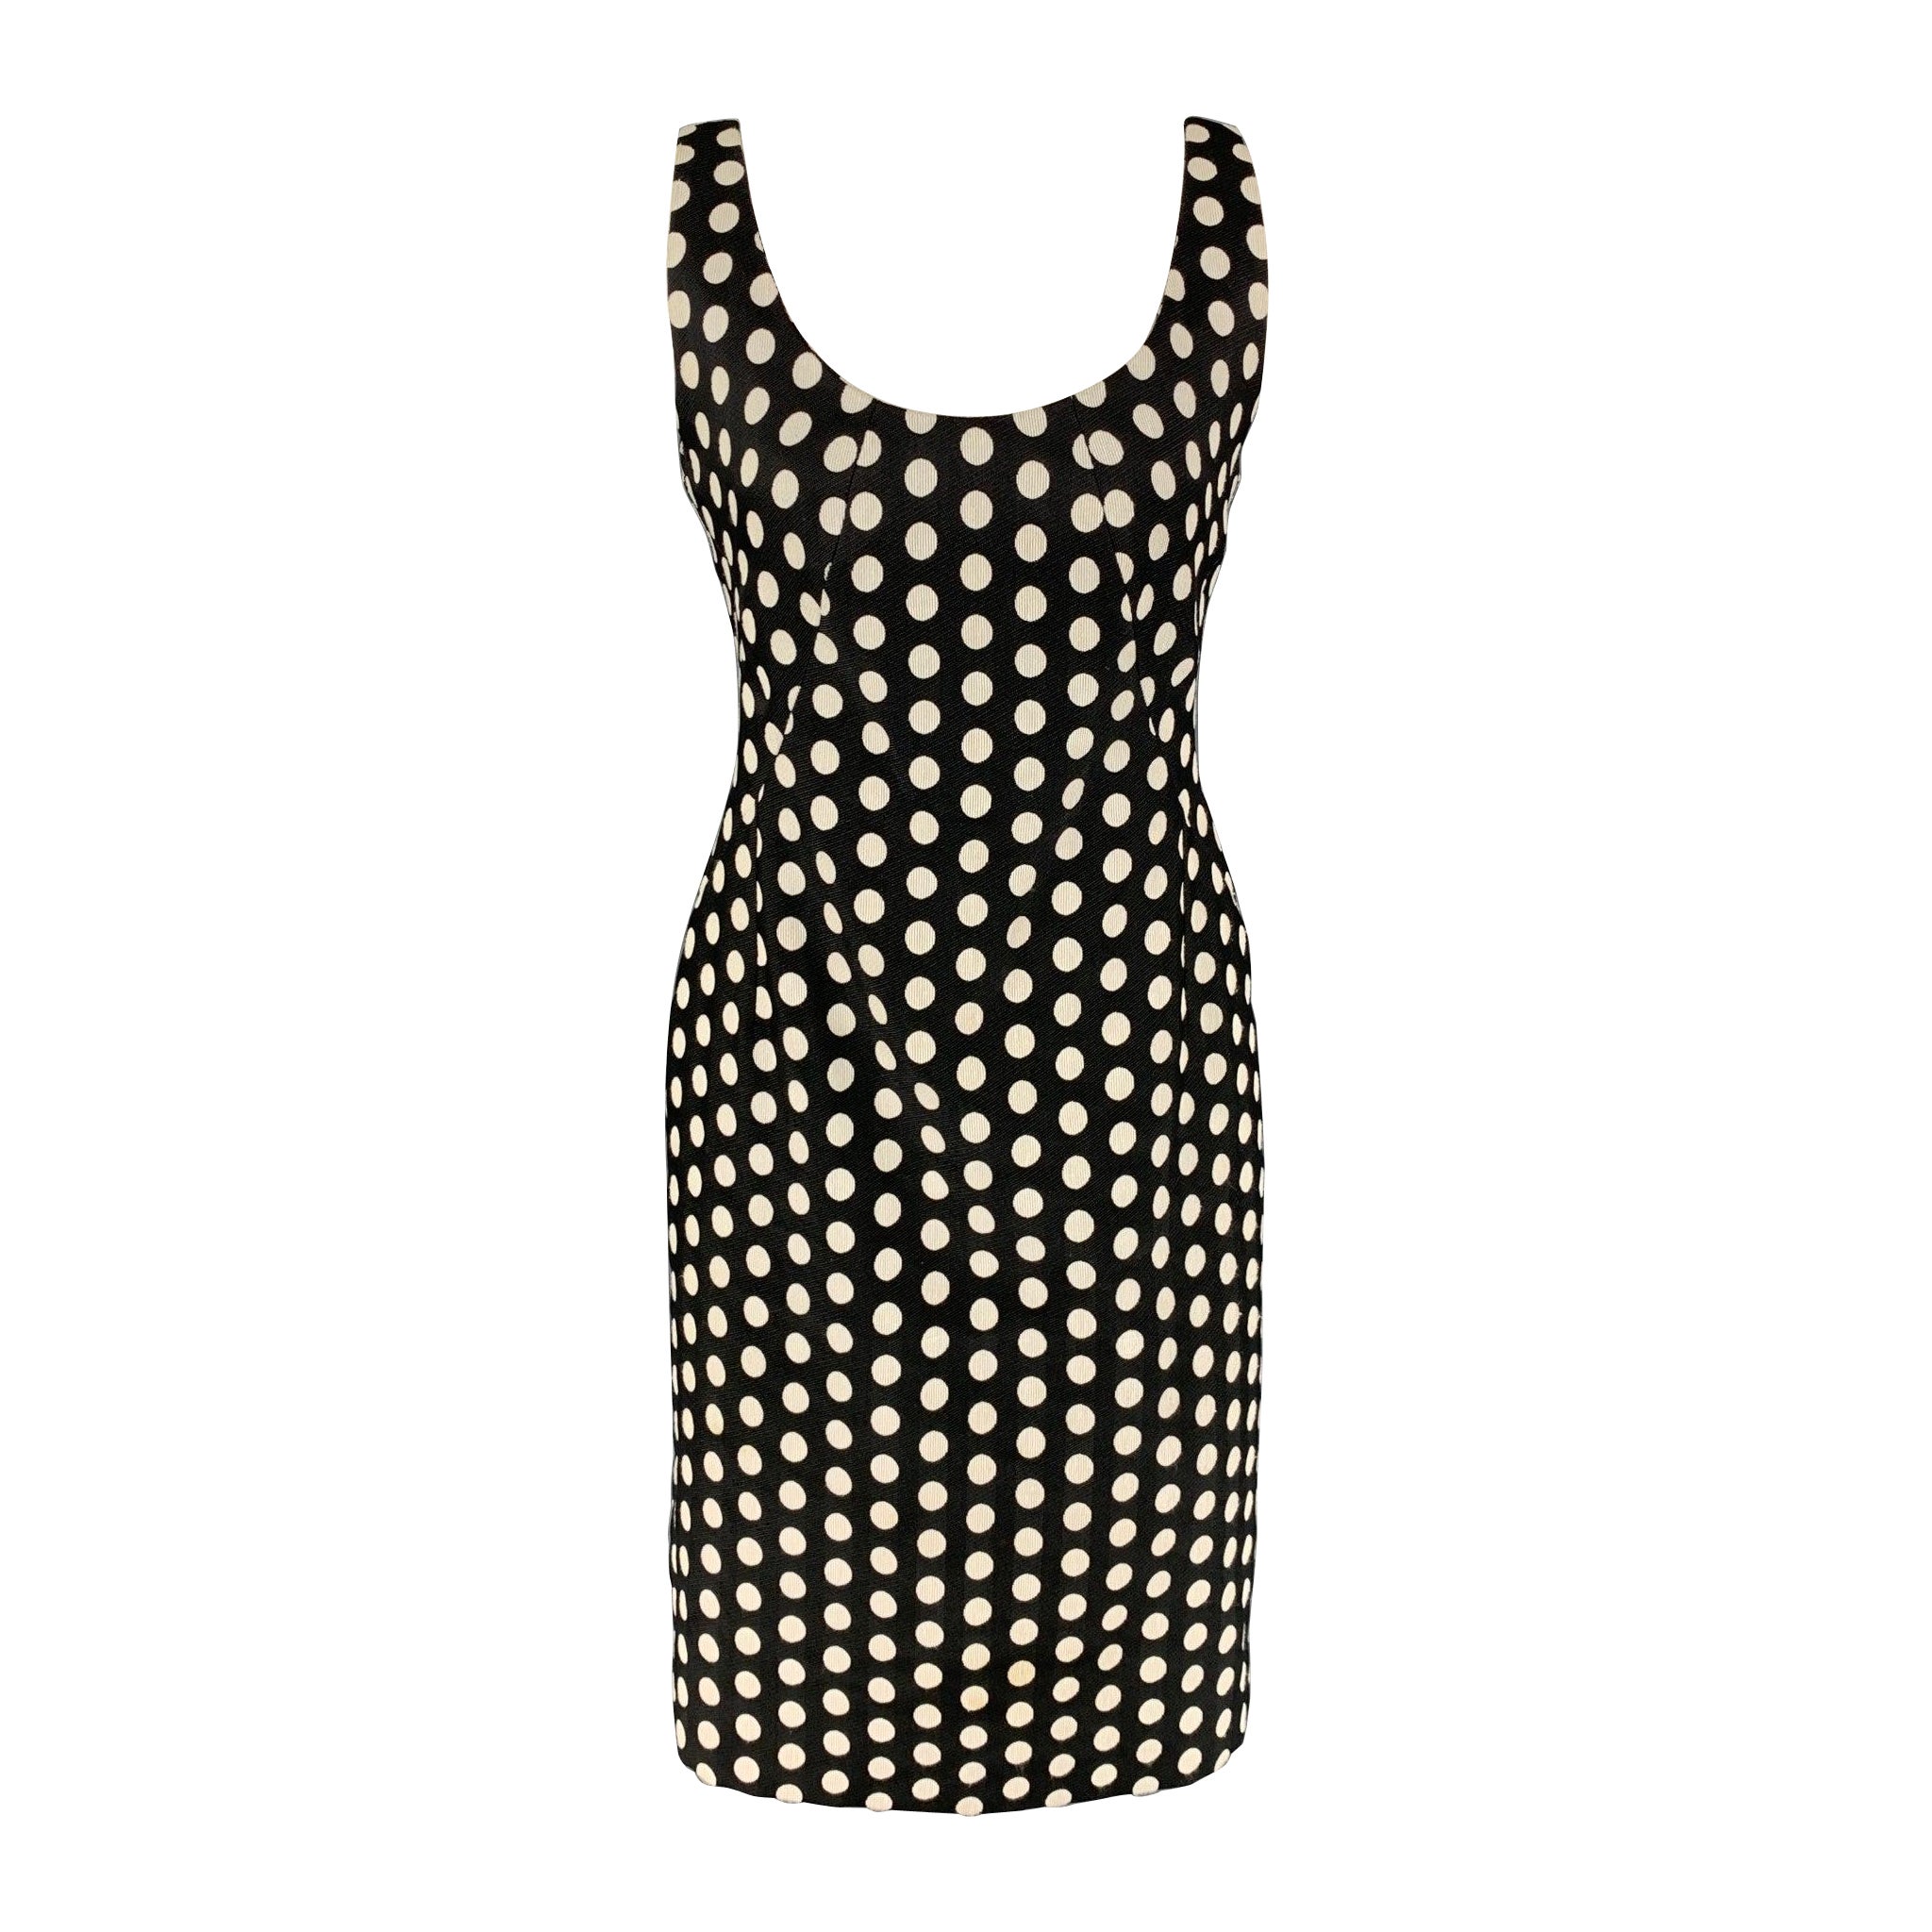 ARMANI COLLEZIONI Size 8 Black & White Polka Dot Sheath Dress For Sale